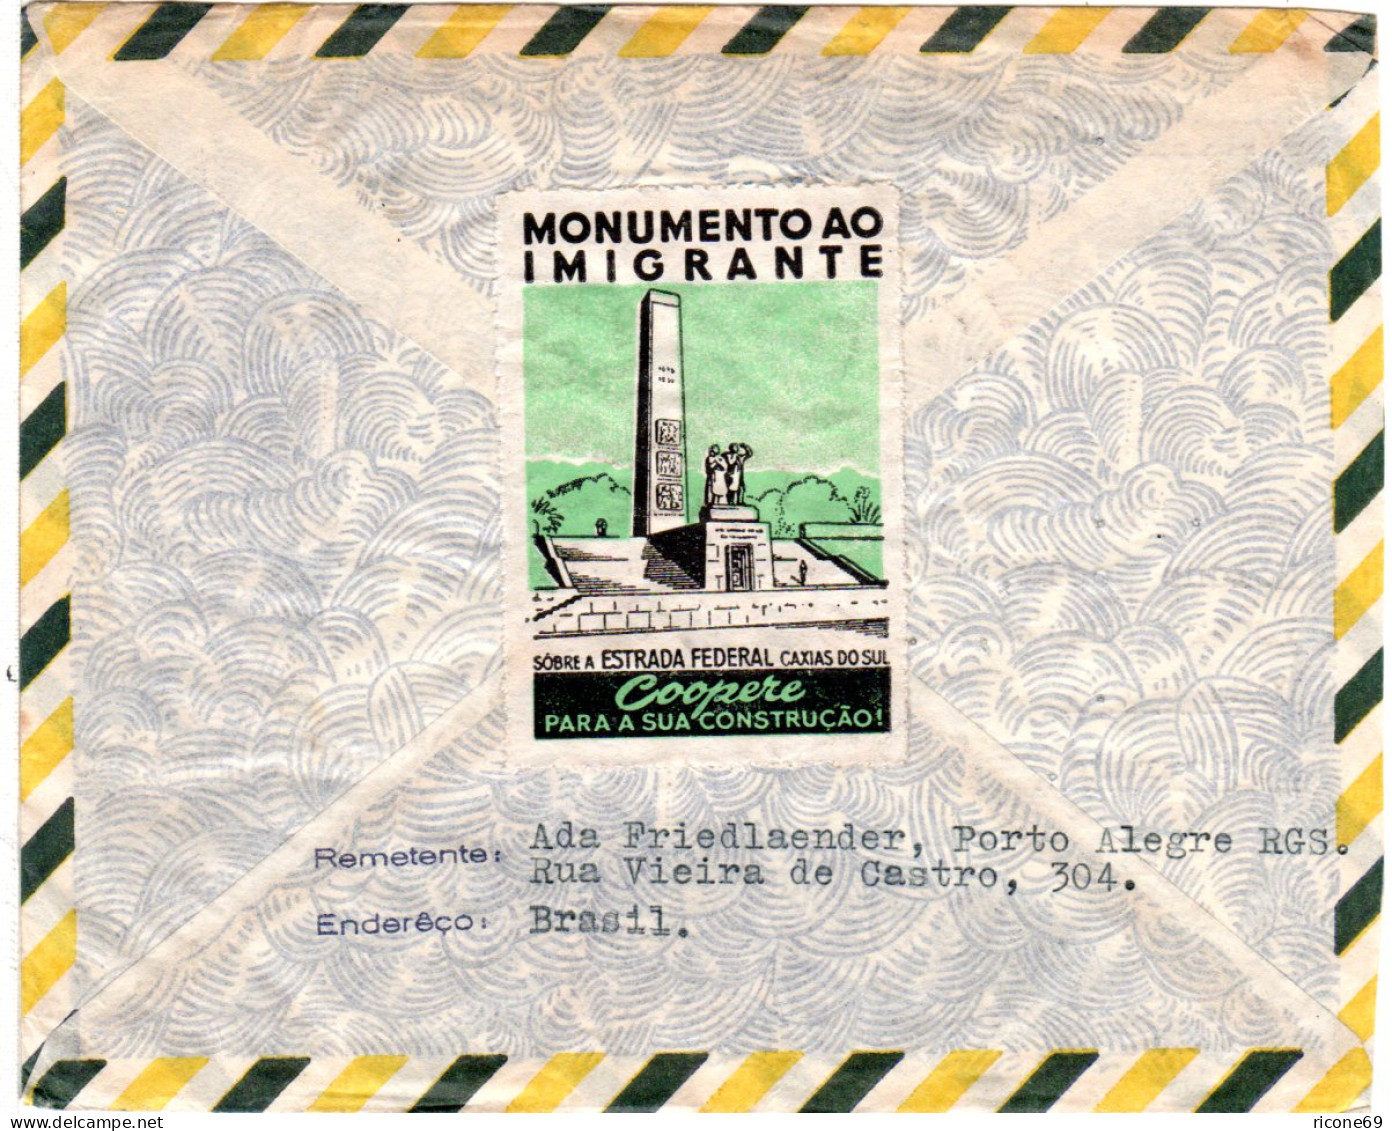 Brasilien 1957/59, 3 Luftpost Einschreiben Briefe  N. Deutschland - Covers & Documents